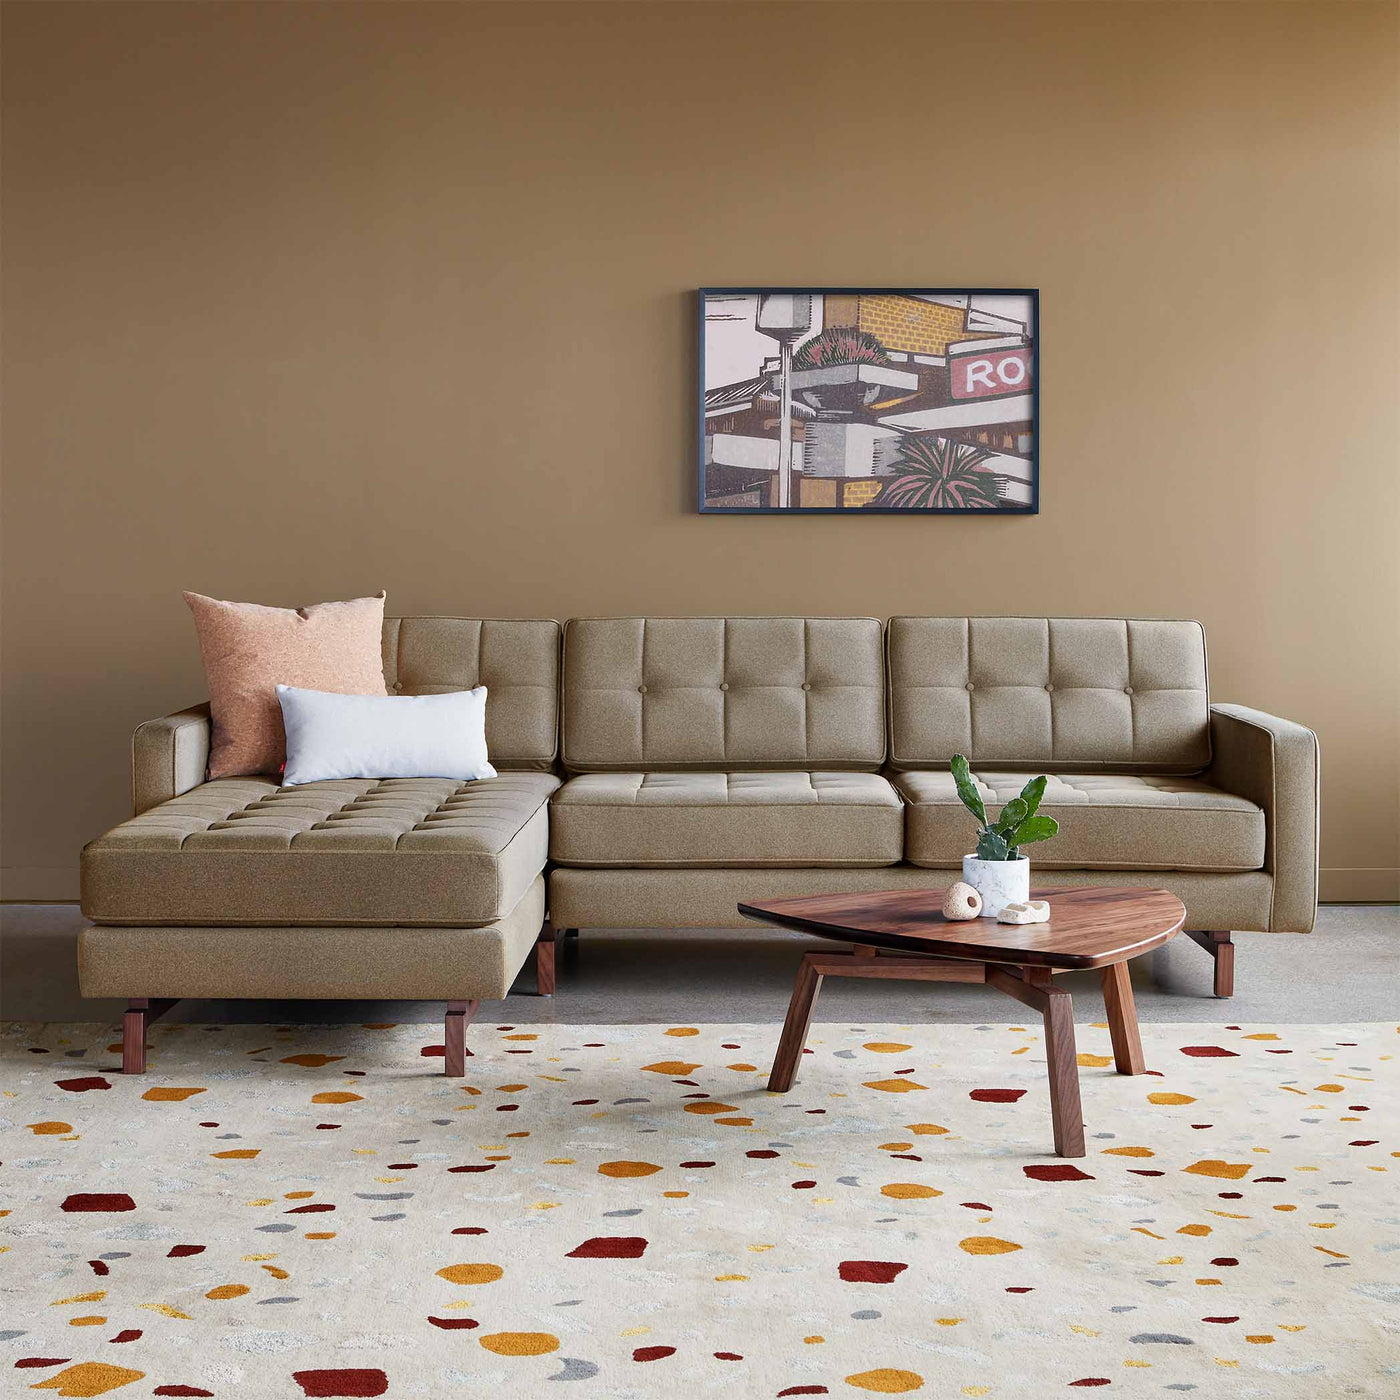 Découvrez le sofa bi-sectionnel Jane 2 de Gus* Modern : une réinterprétation contemporaine du design Mid-century Modern avec une flexibilité de configuration